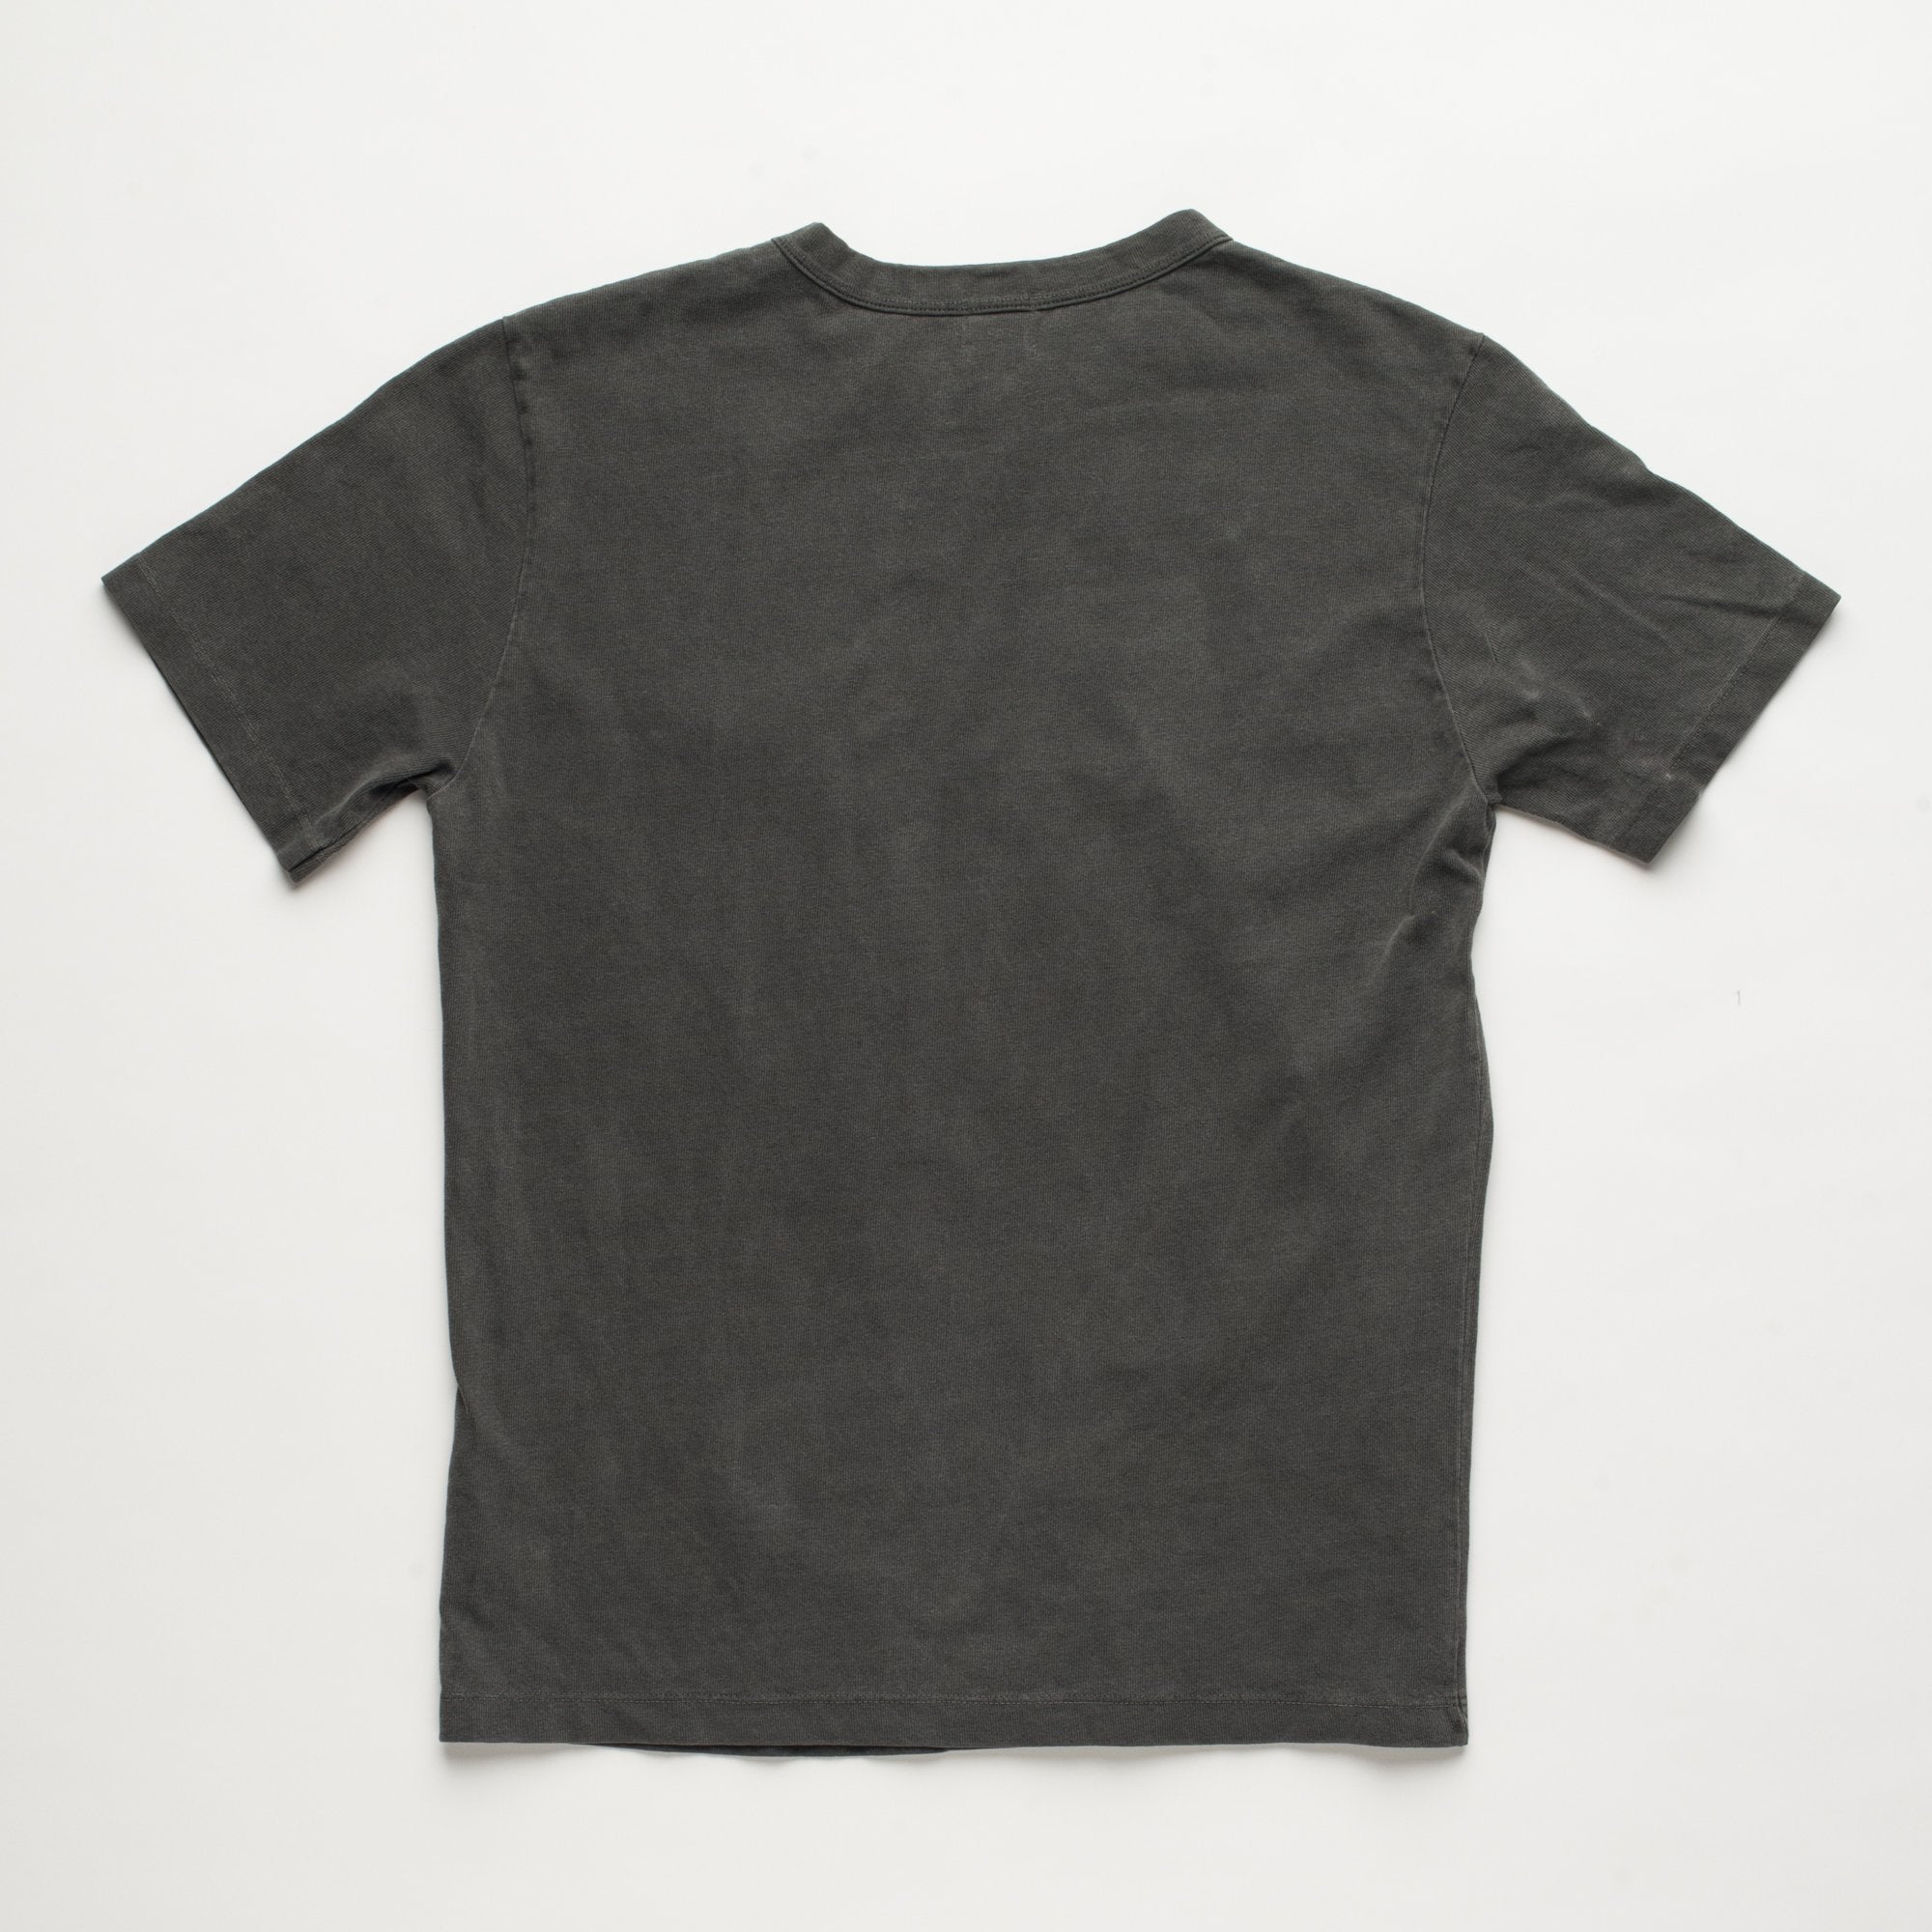 Freenote Cloth 13oz Pocket T-Shirt - Midnight